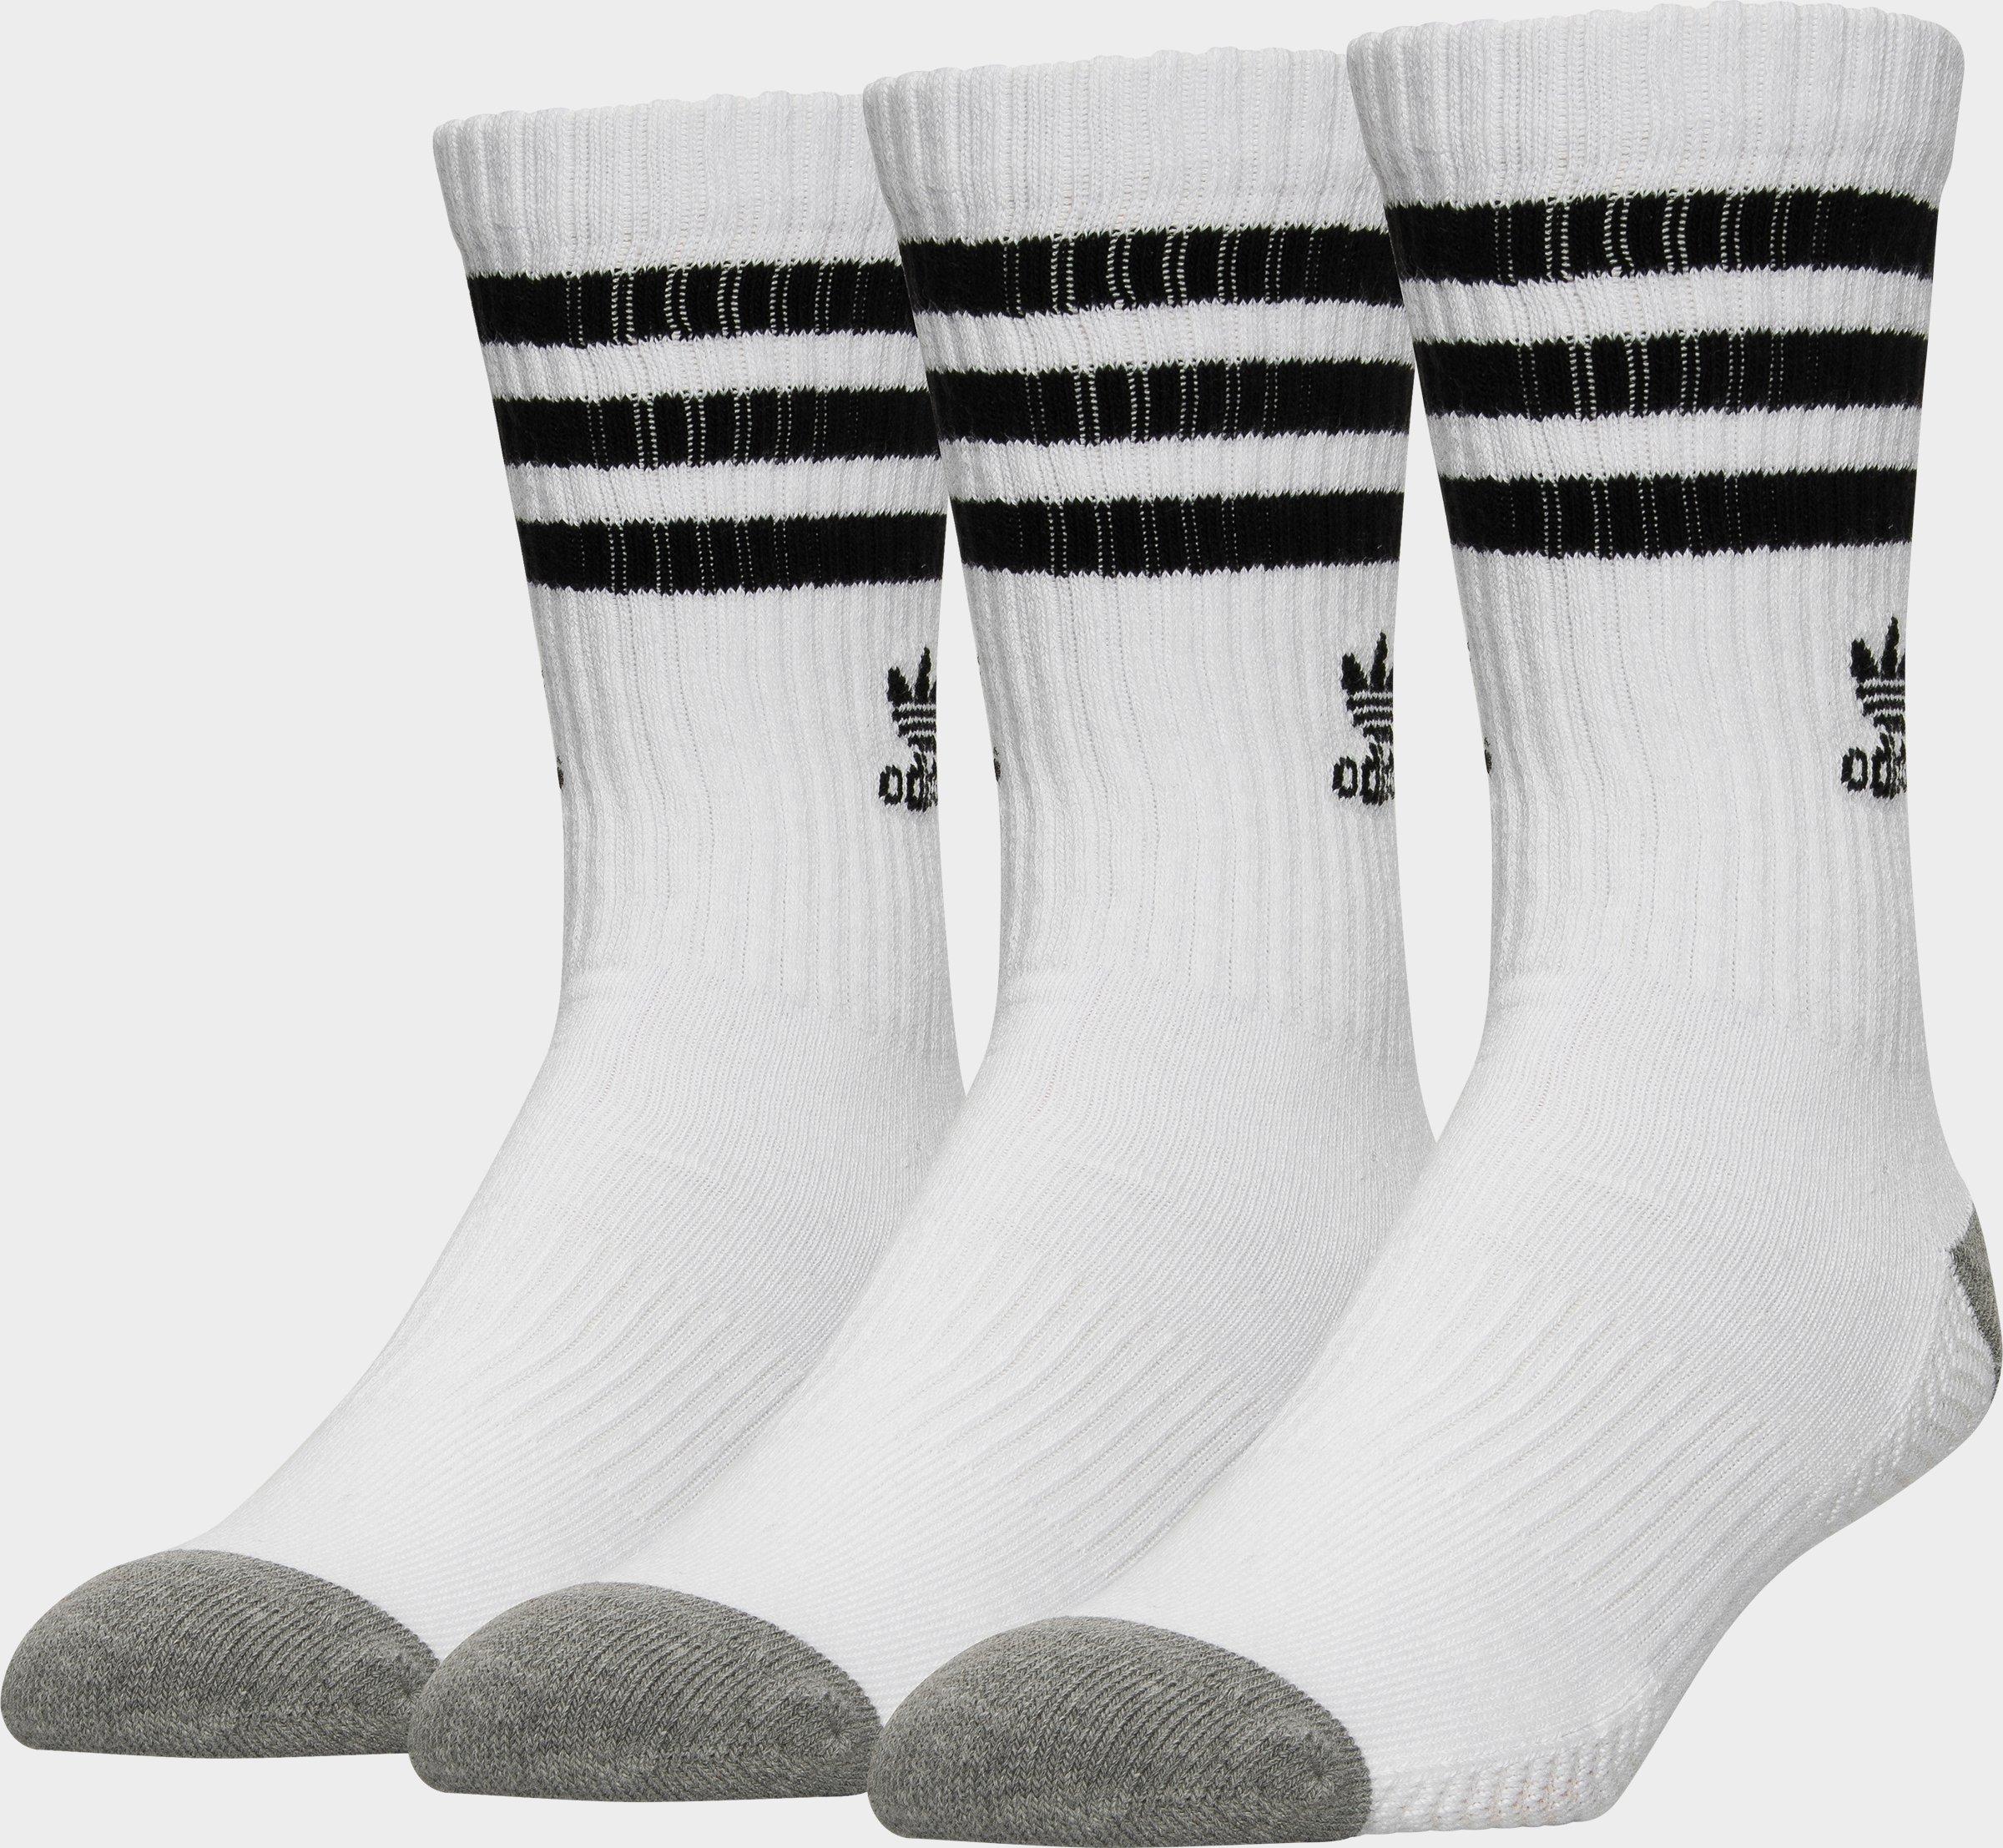 mens adidas socks white